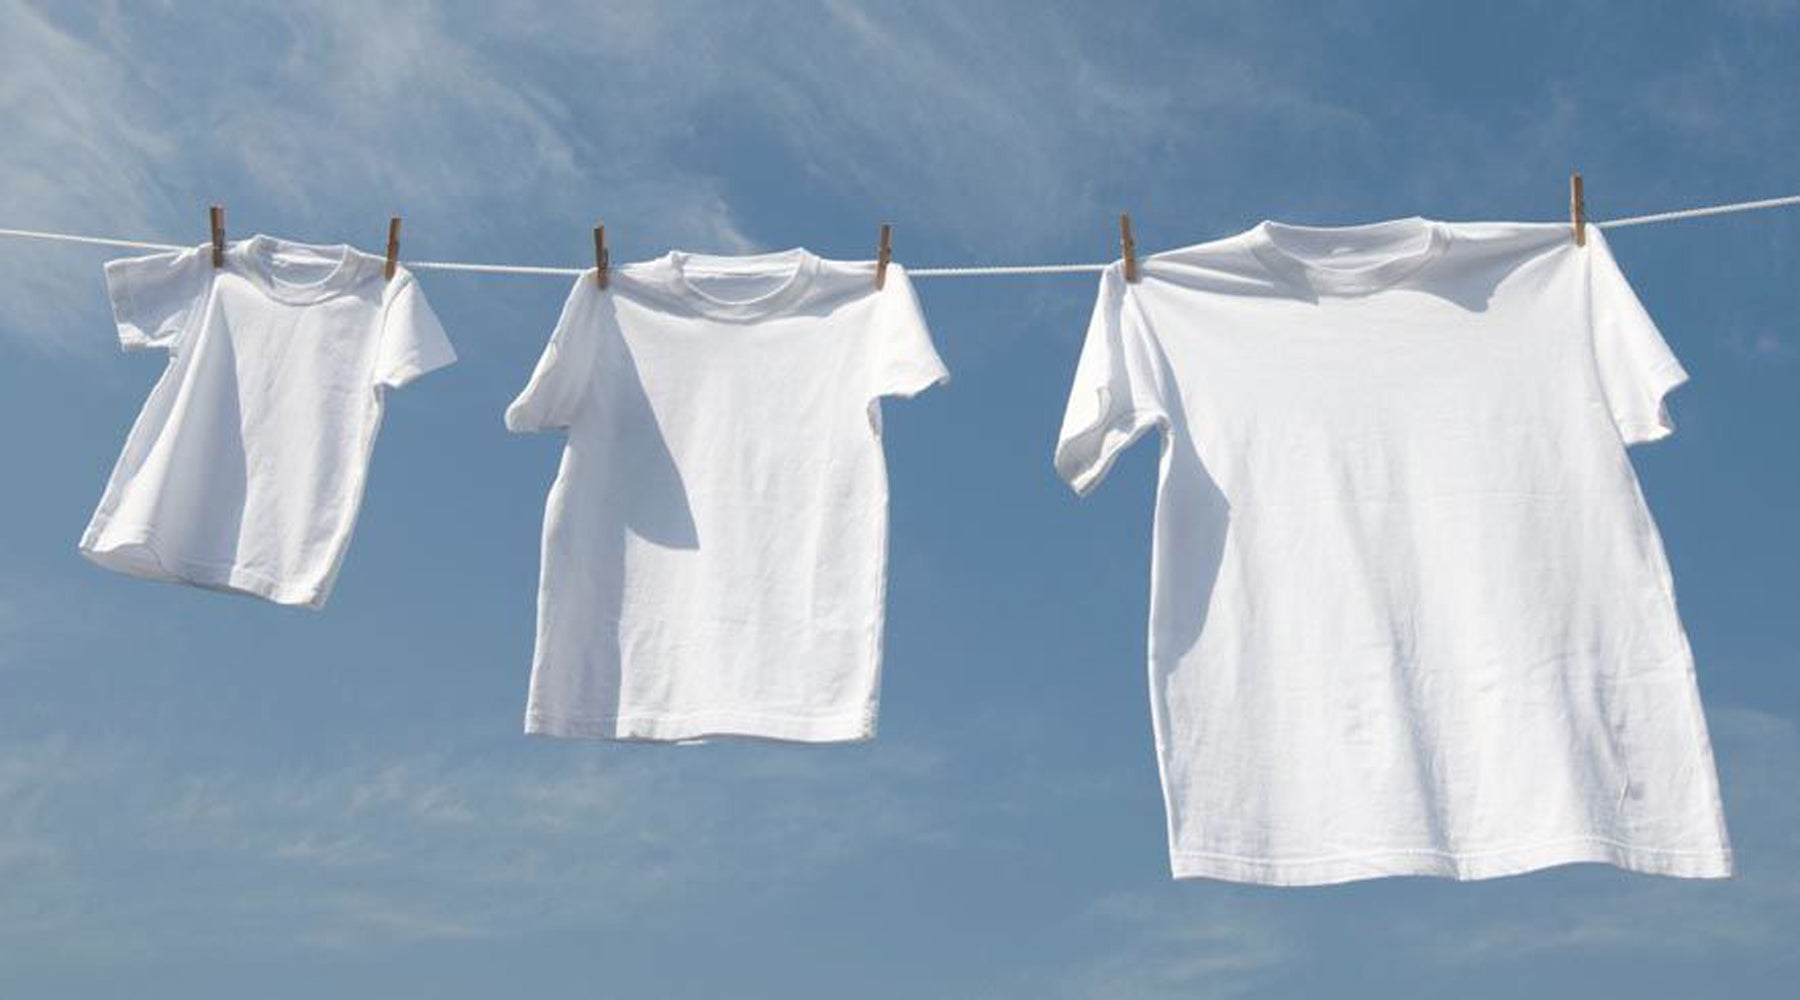 How To Wash White Clothing? – Yesfashion